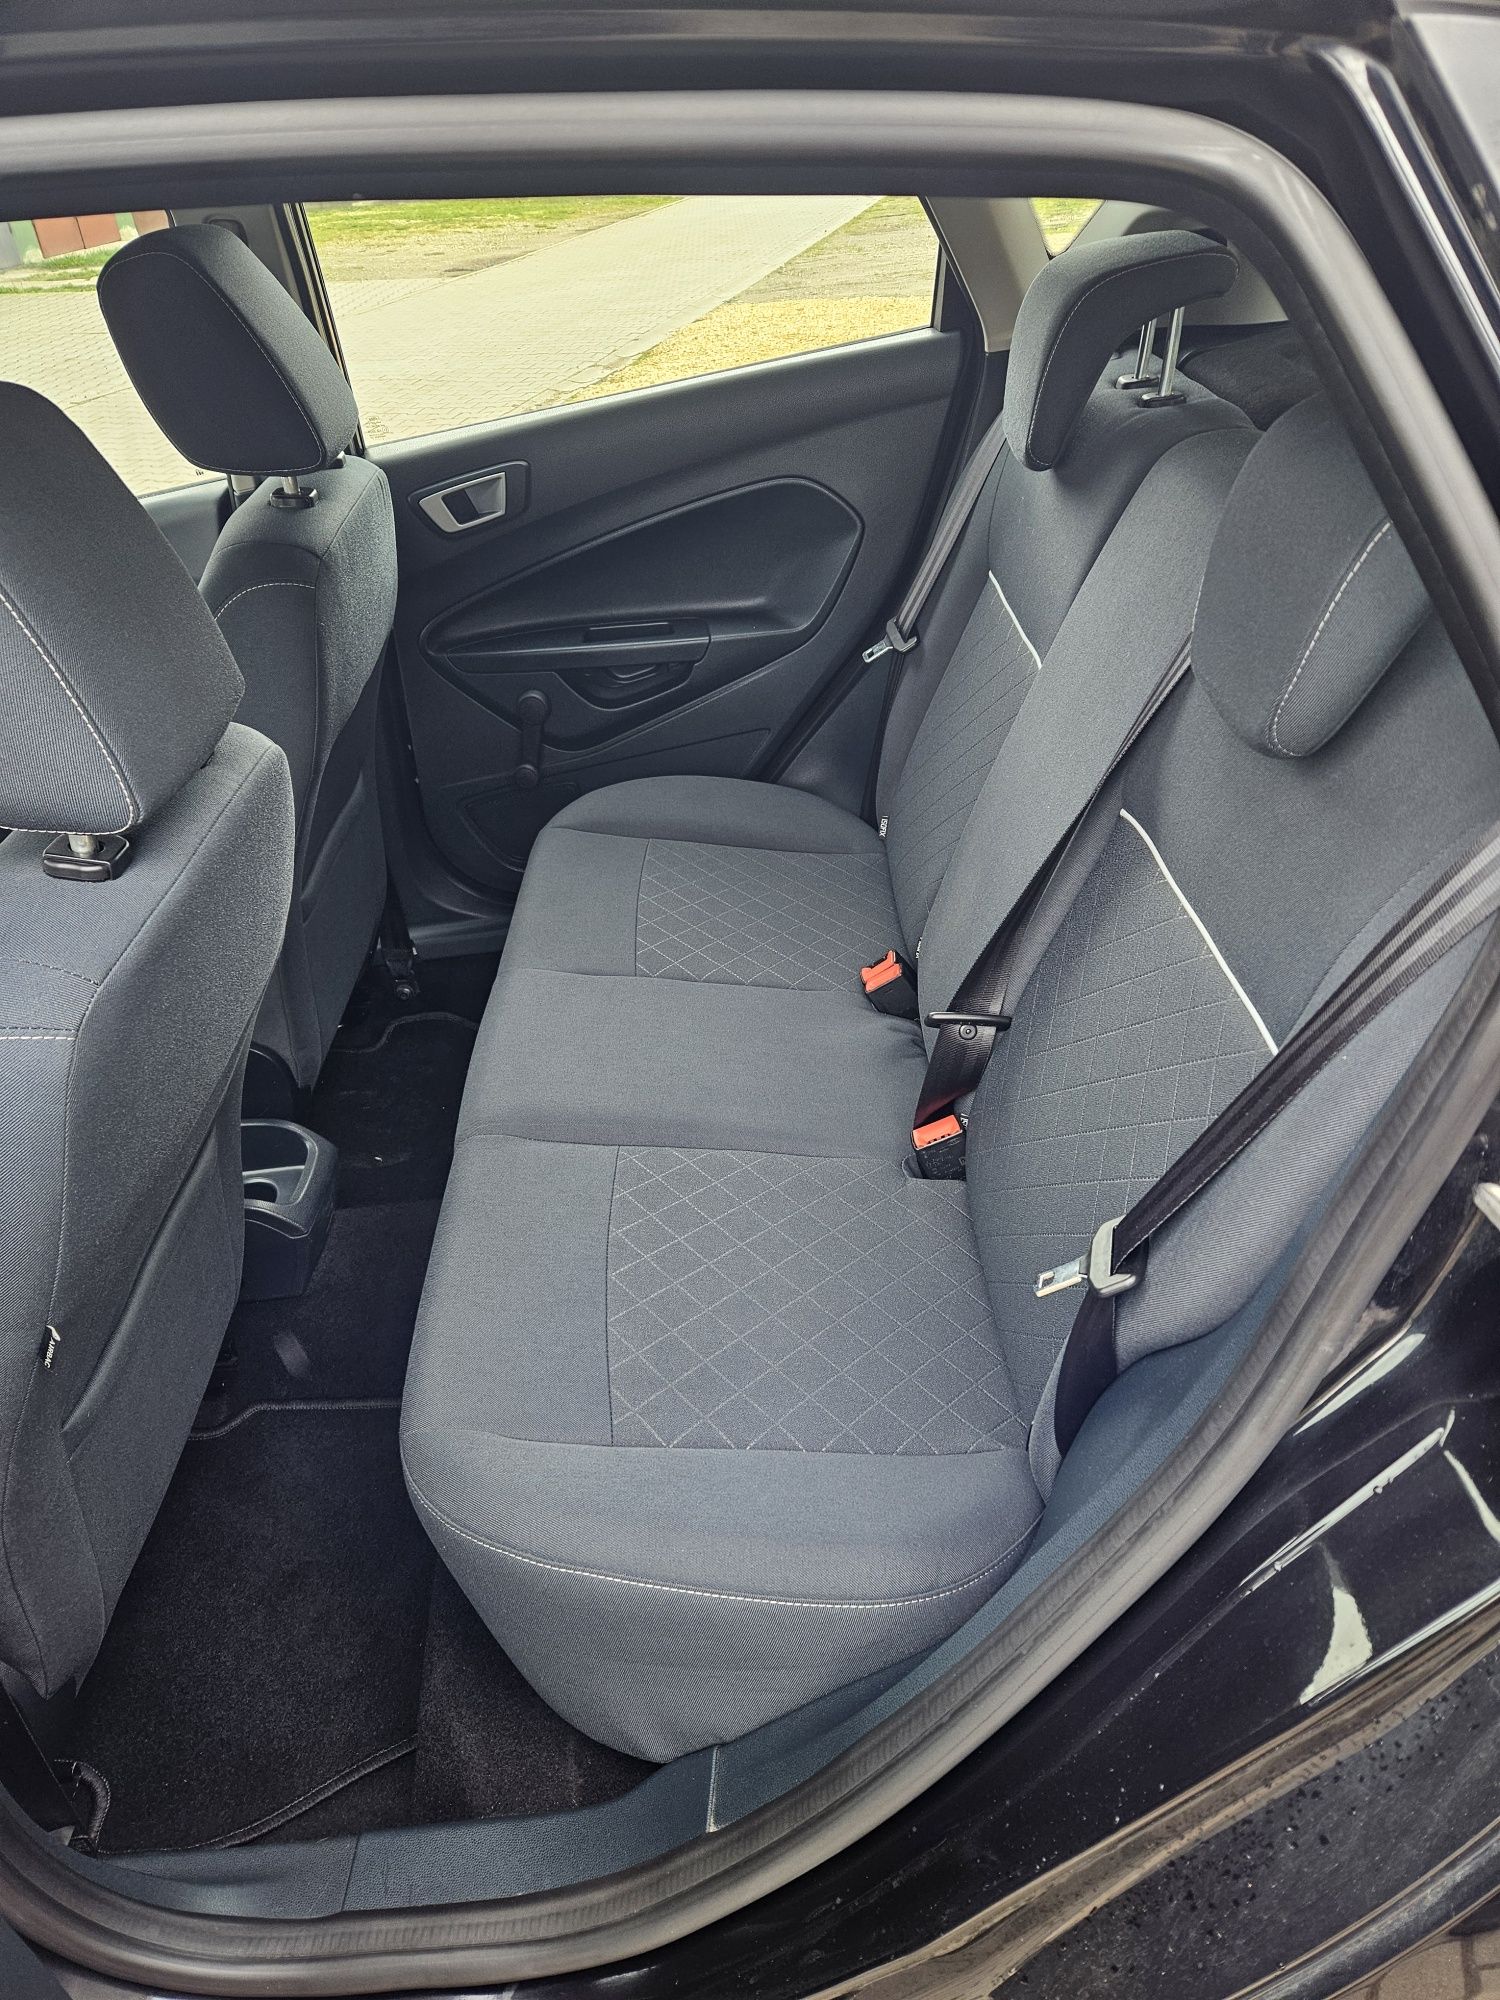 Ford Fiesta 2012R 1.2 82km 170tyśPrzebiegu Klima Grzana Szyba i Fotele